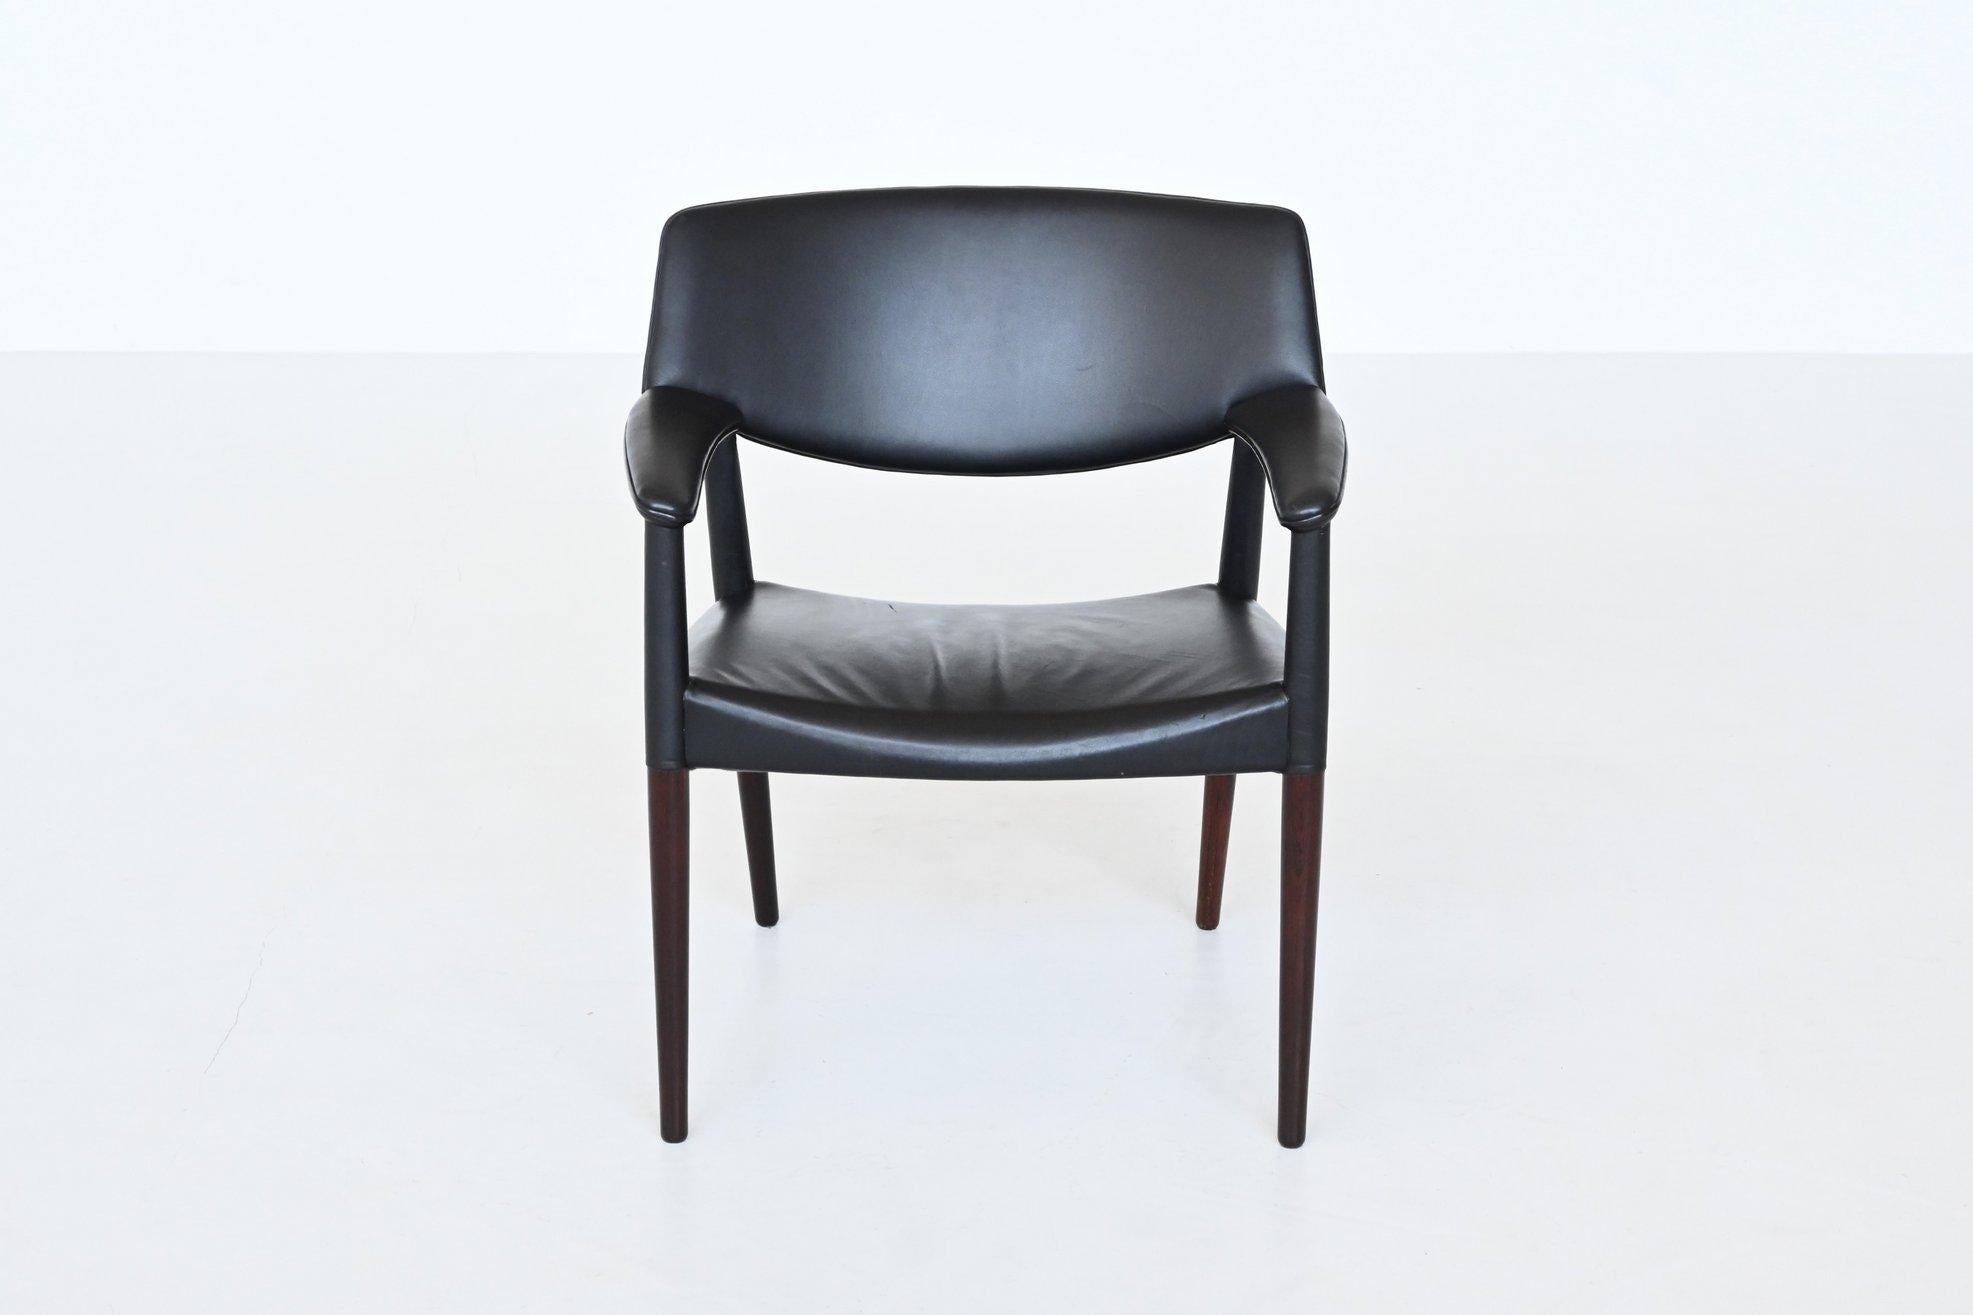 Wunderschöner Sessel, entworfen von Ejnar Larsen & Aksel Bender Madsen für Willy Beck, Dänemark 1949. Dieser sehr bequeme breite Sessel oder Lounge Chair ist mit hochwertigem schwarzem Leder bezogen und hat massive Palisanderbeine. Das Leder zieht